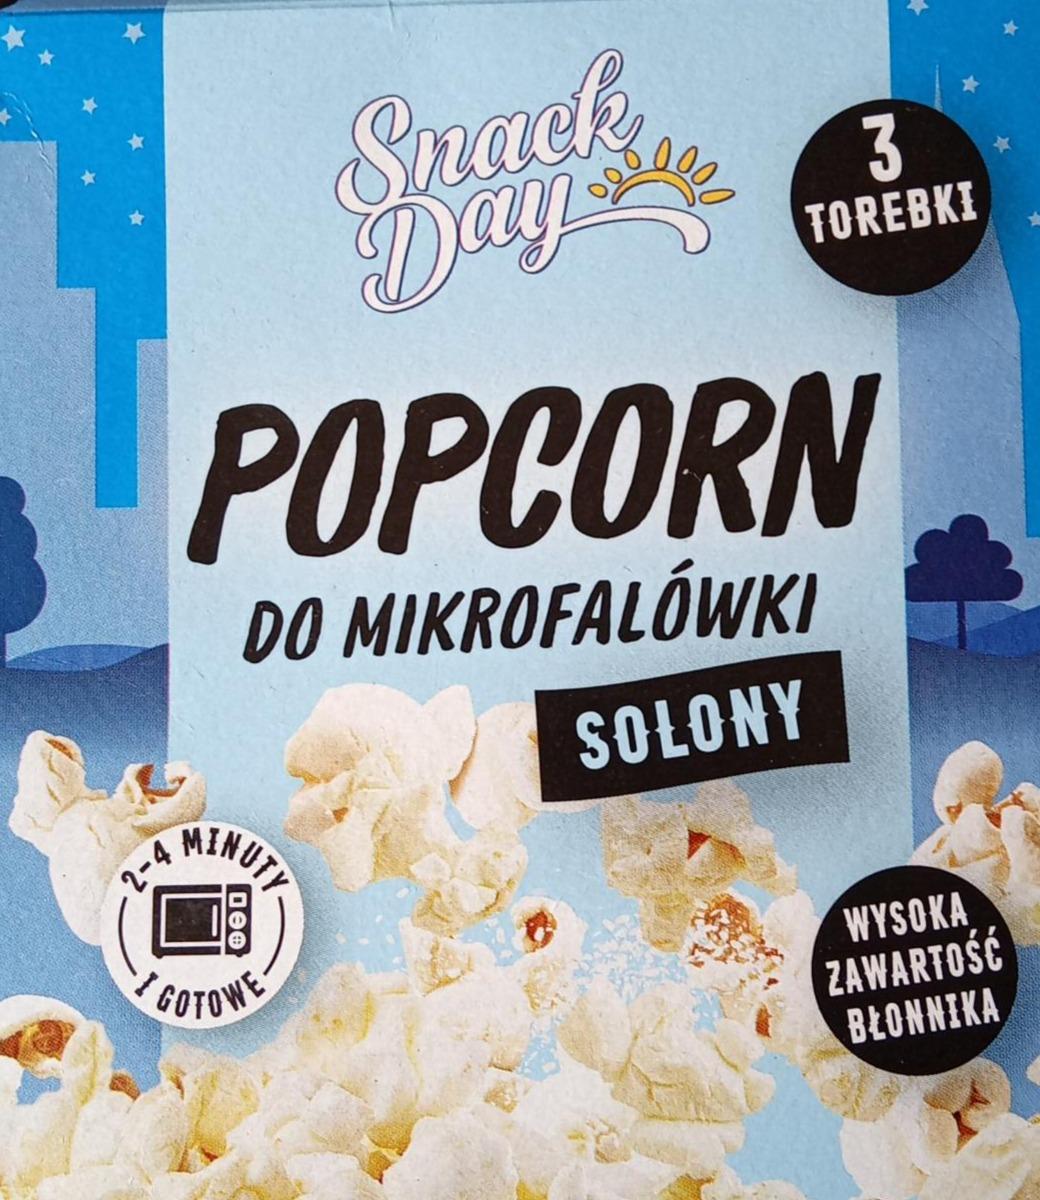 Zdjęcia - Popcorn snack day do mikrofalówki solony Snack Day